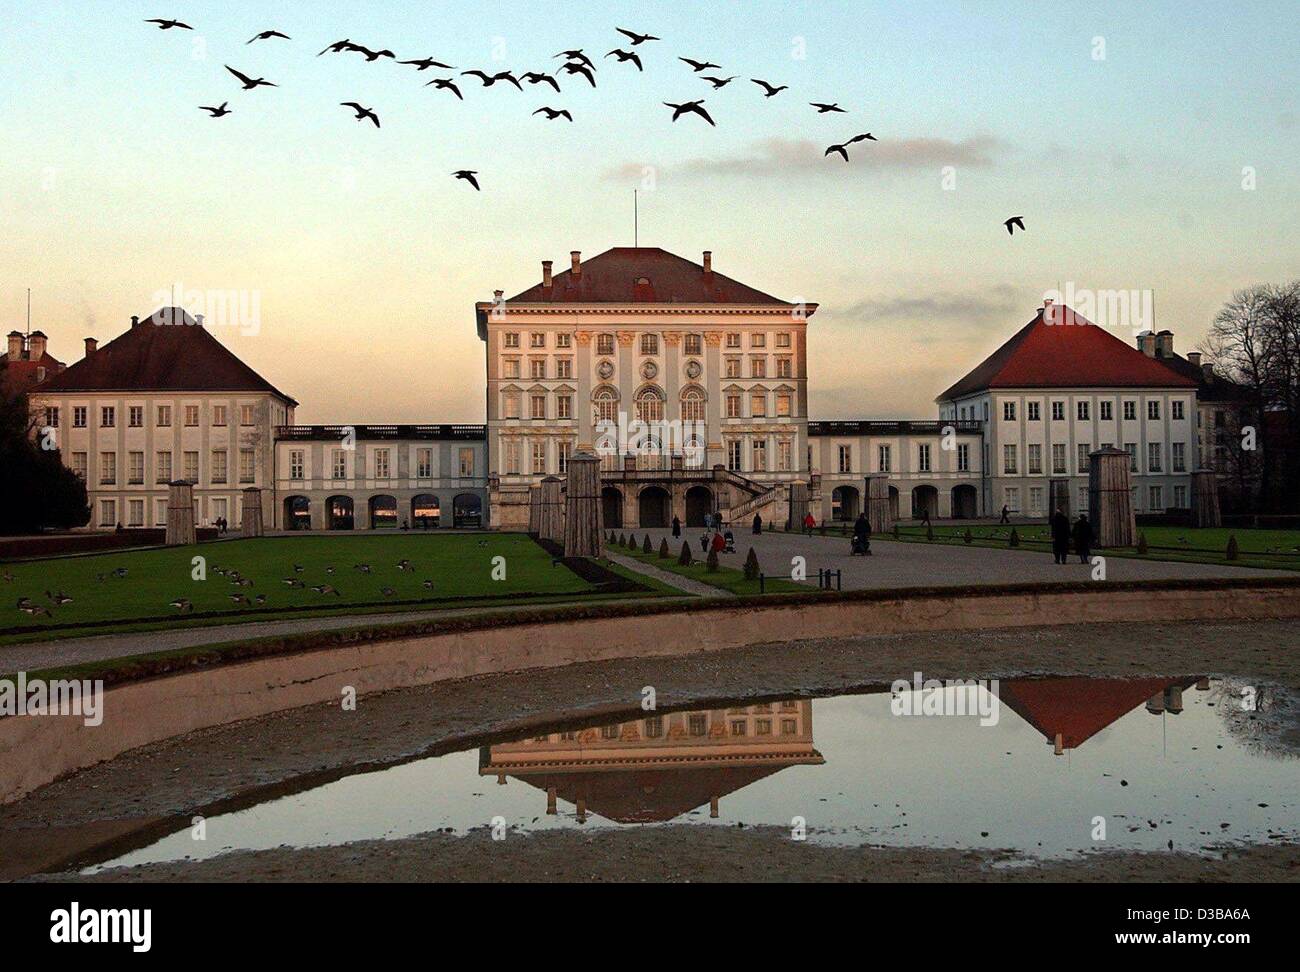 (Dpa) - überfliegen Brants Schloss Nymphenburg in München, 20. November 2002. Das Gebäude der Nymphenburger Schloss begann im 17. Jahrhundert und war die ehemalige Sommerresidenz der Herrscher von Bayern. Stockfoto